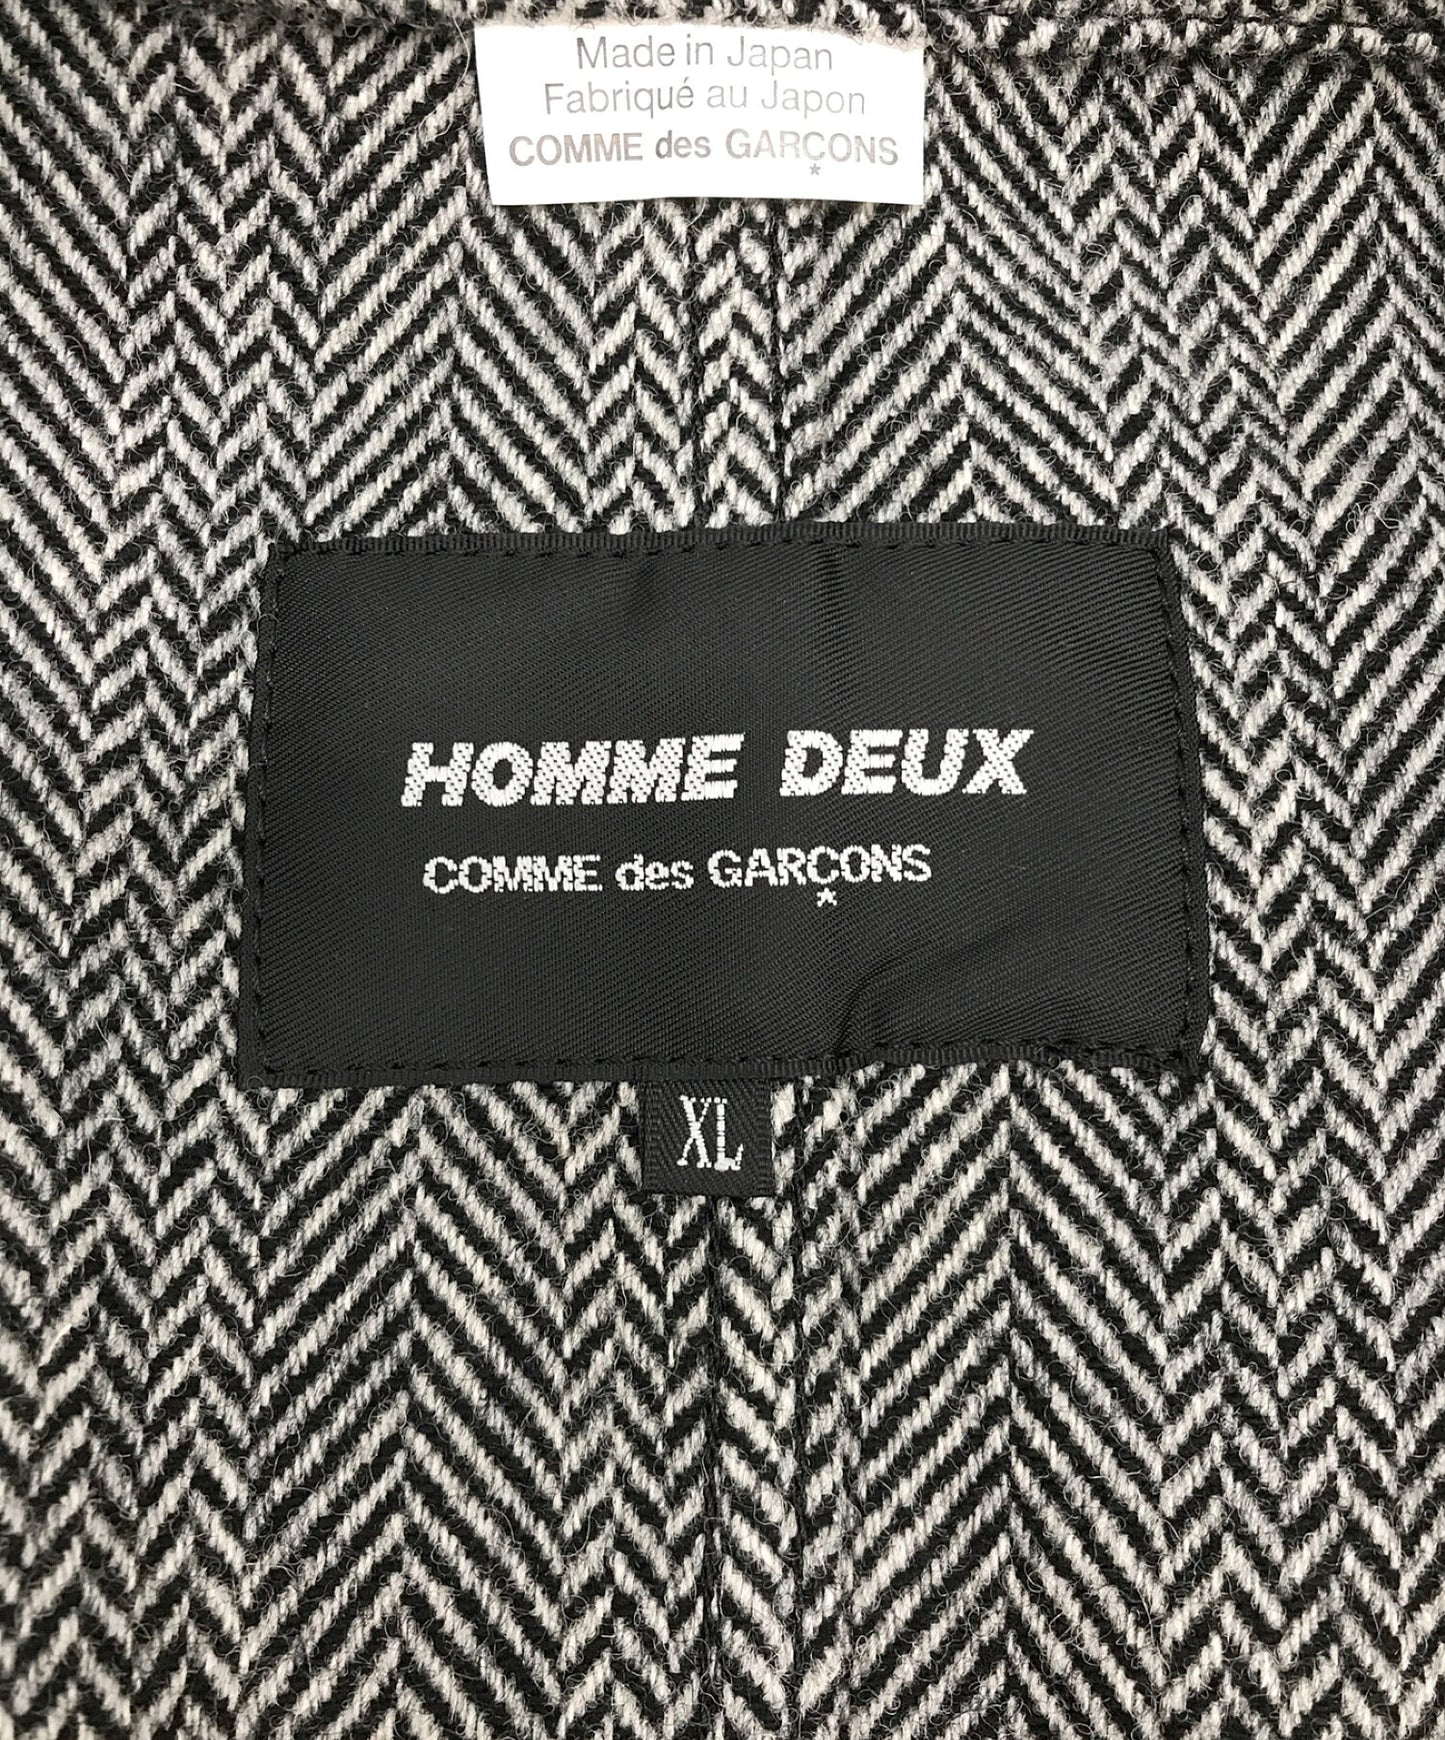 COMME des GARCONS HOMME DEUX Tailored Jackets Jackets DT-J057